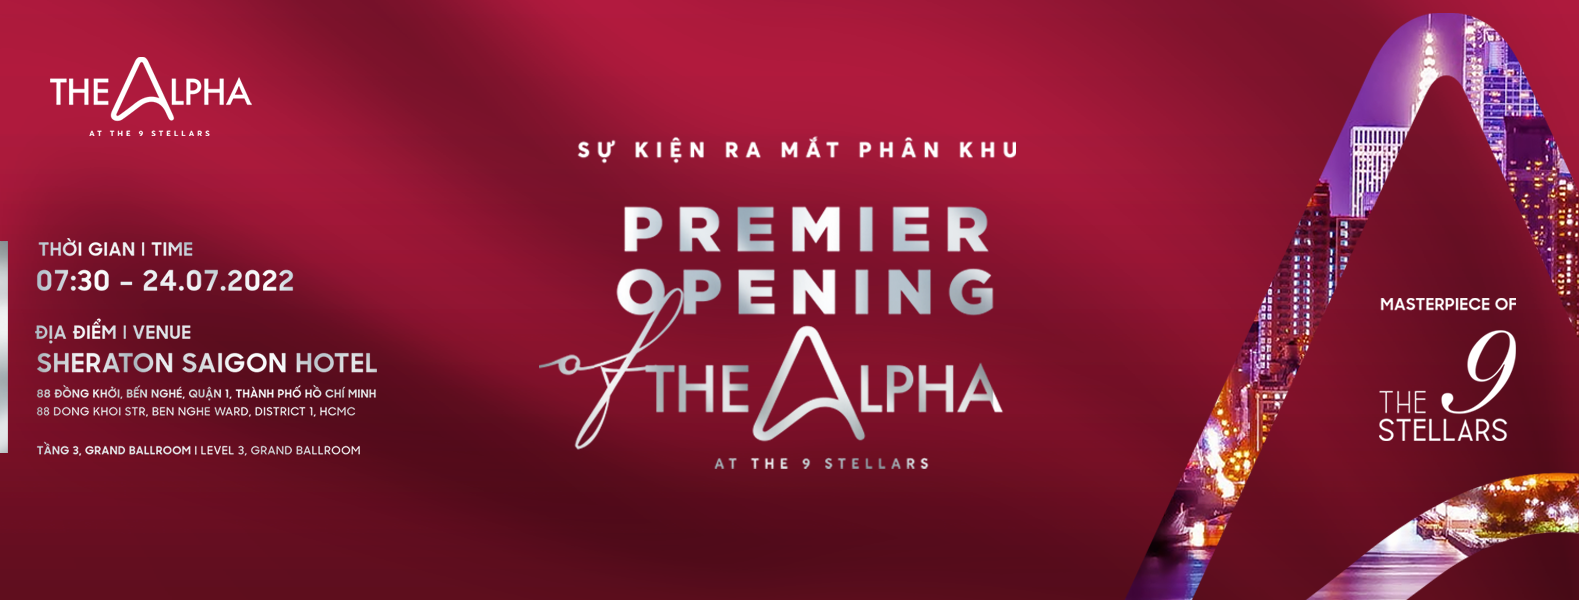 Sự kiện ra mắt The Alpha - Dự án The 9 Stellars